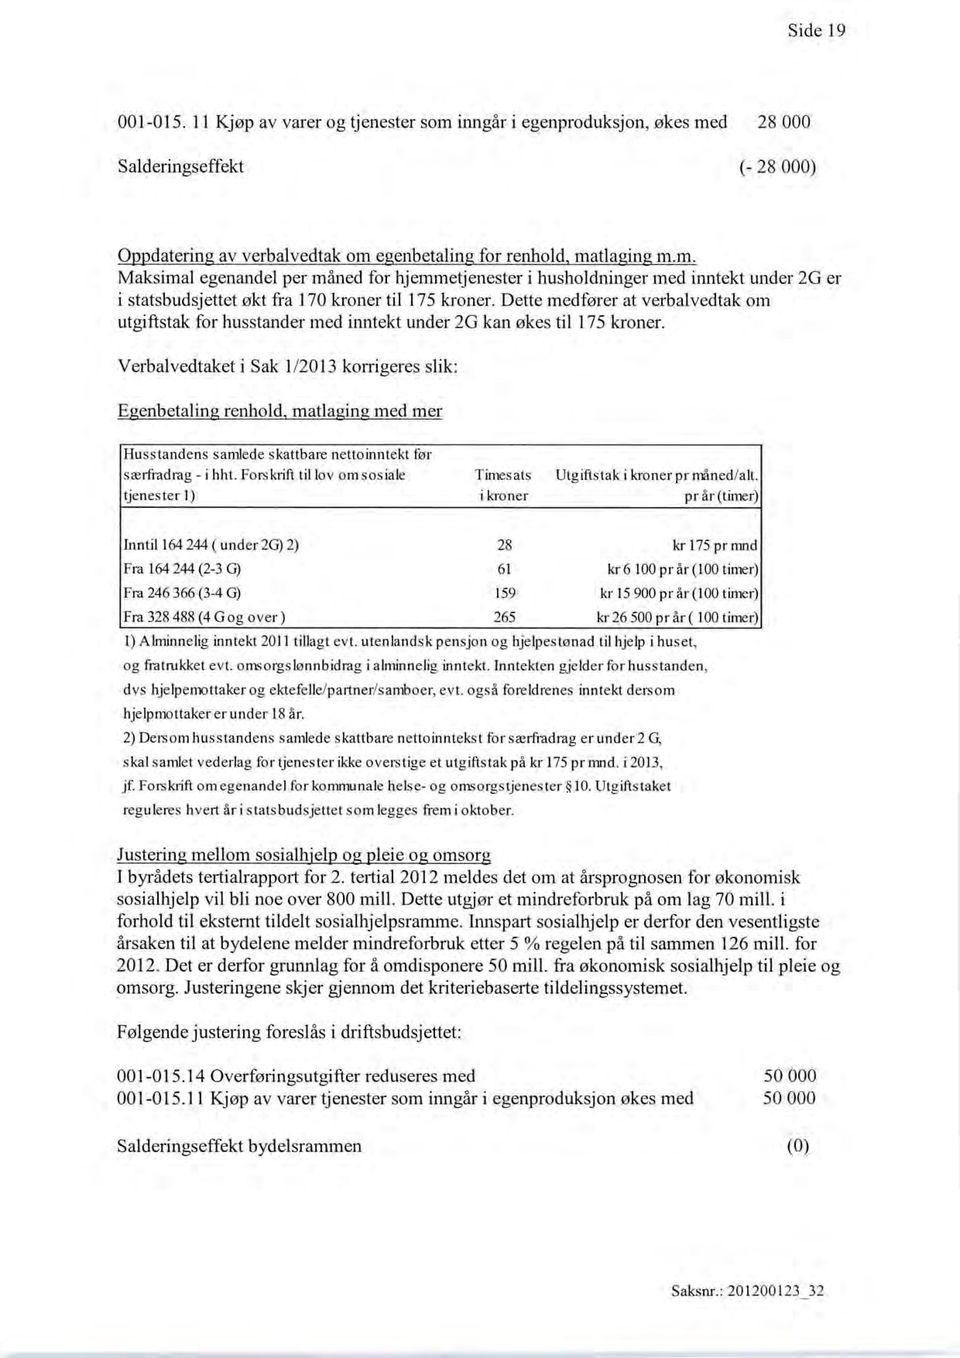 Verbalvedtaket i Sak 1/2013 korrigeres slik: E enbetalin renhold matla in med mer Husstandens samlede skattbare netto inntekt før særfradrag - i hht.